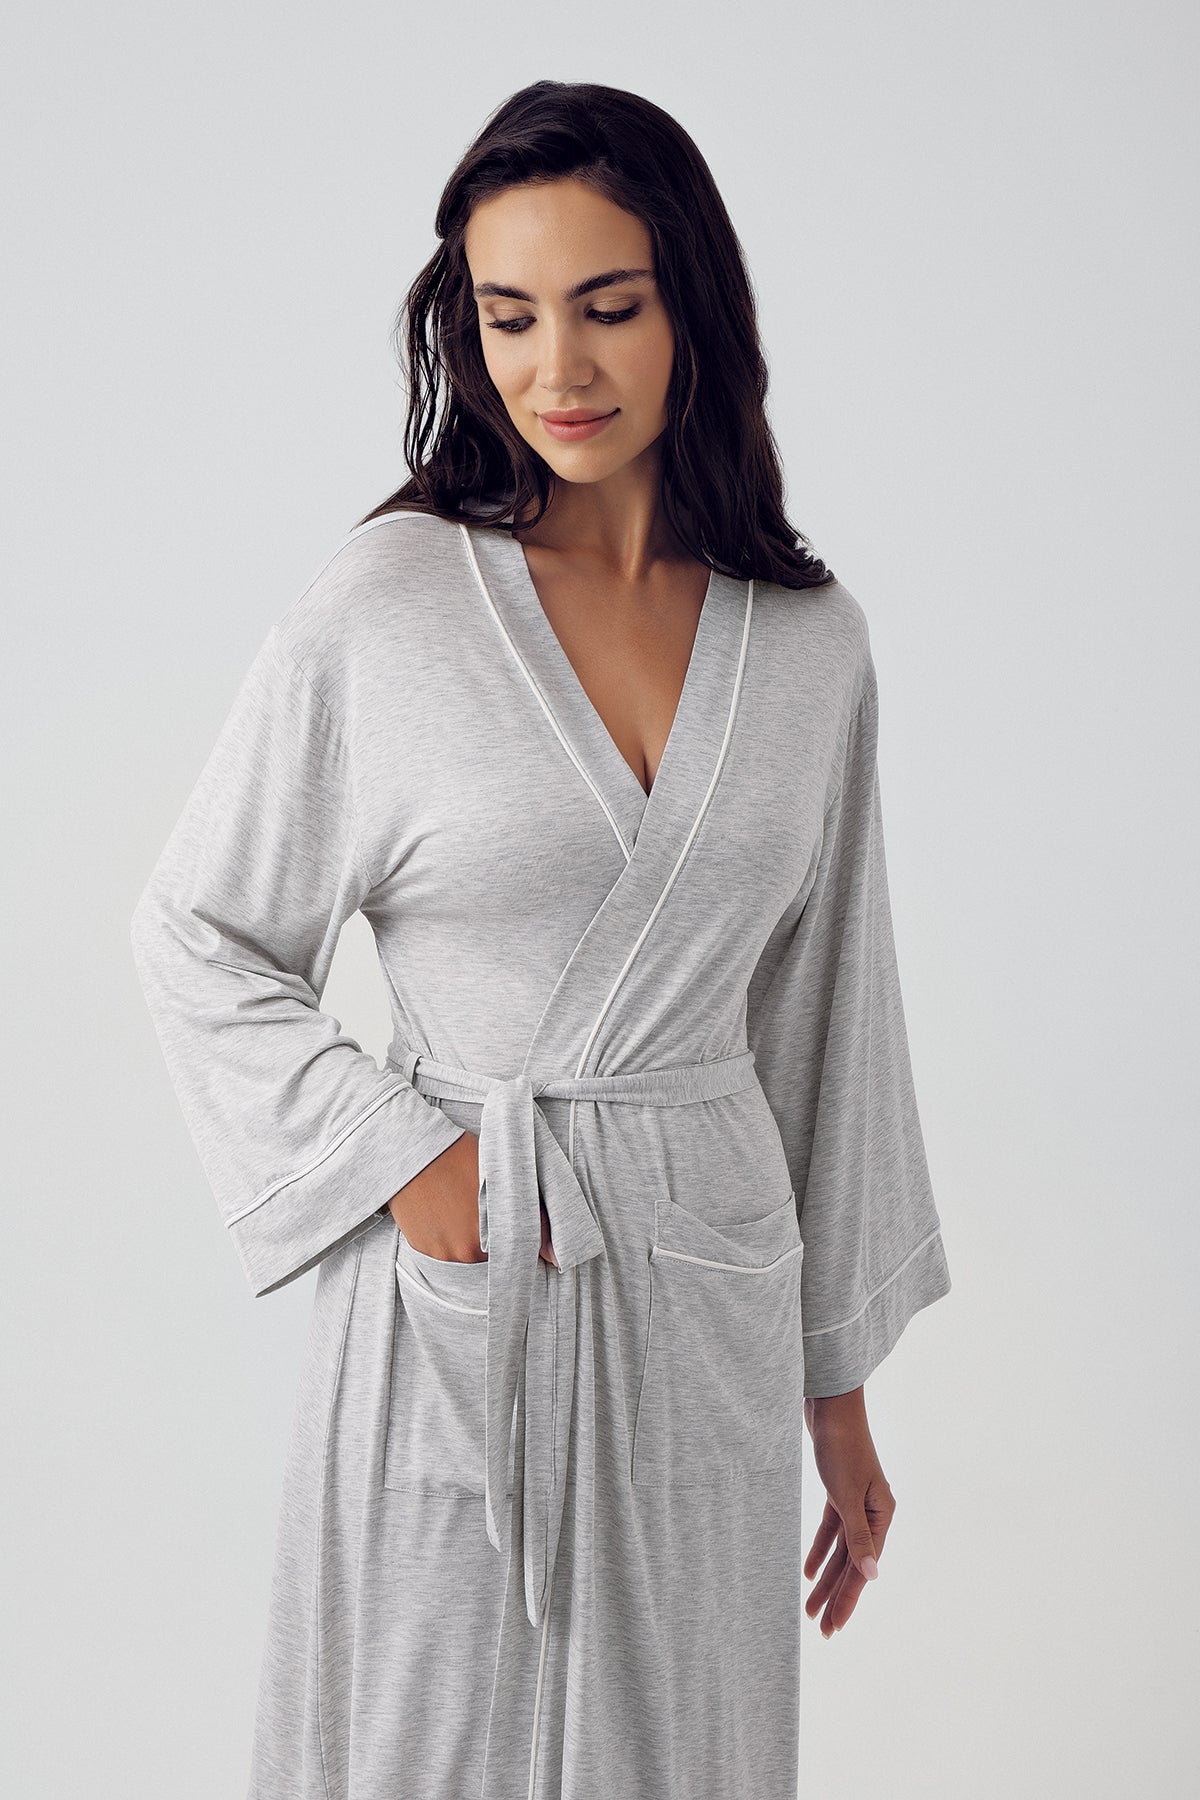 Shopymommy 15503 Melange Lace Maternity Robe Grey